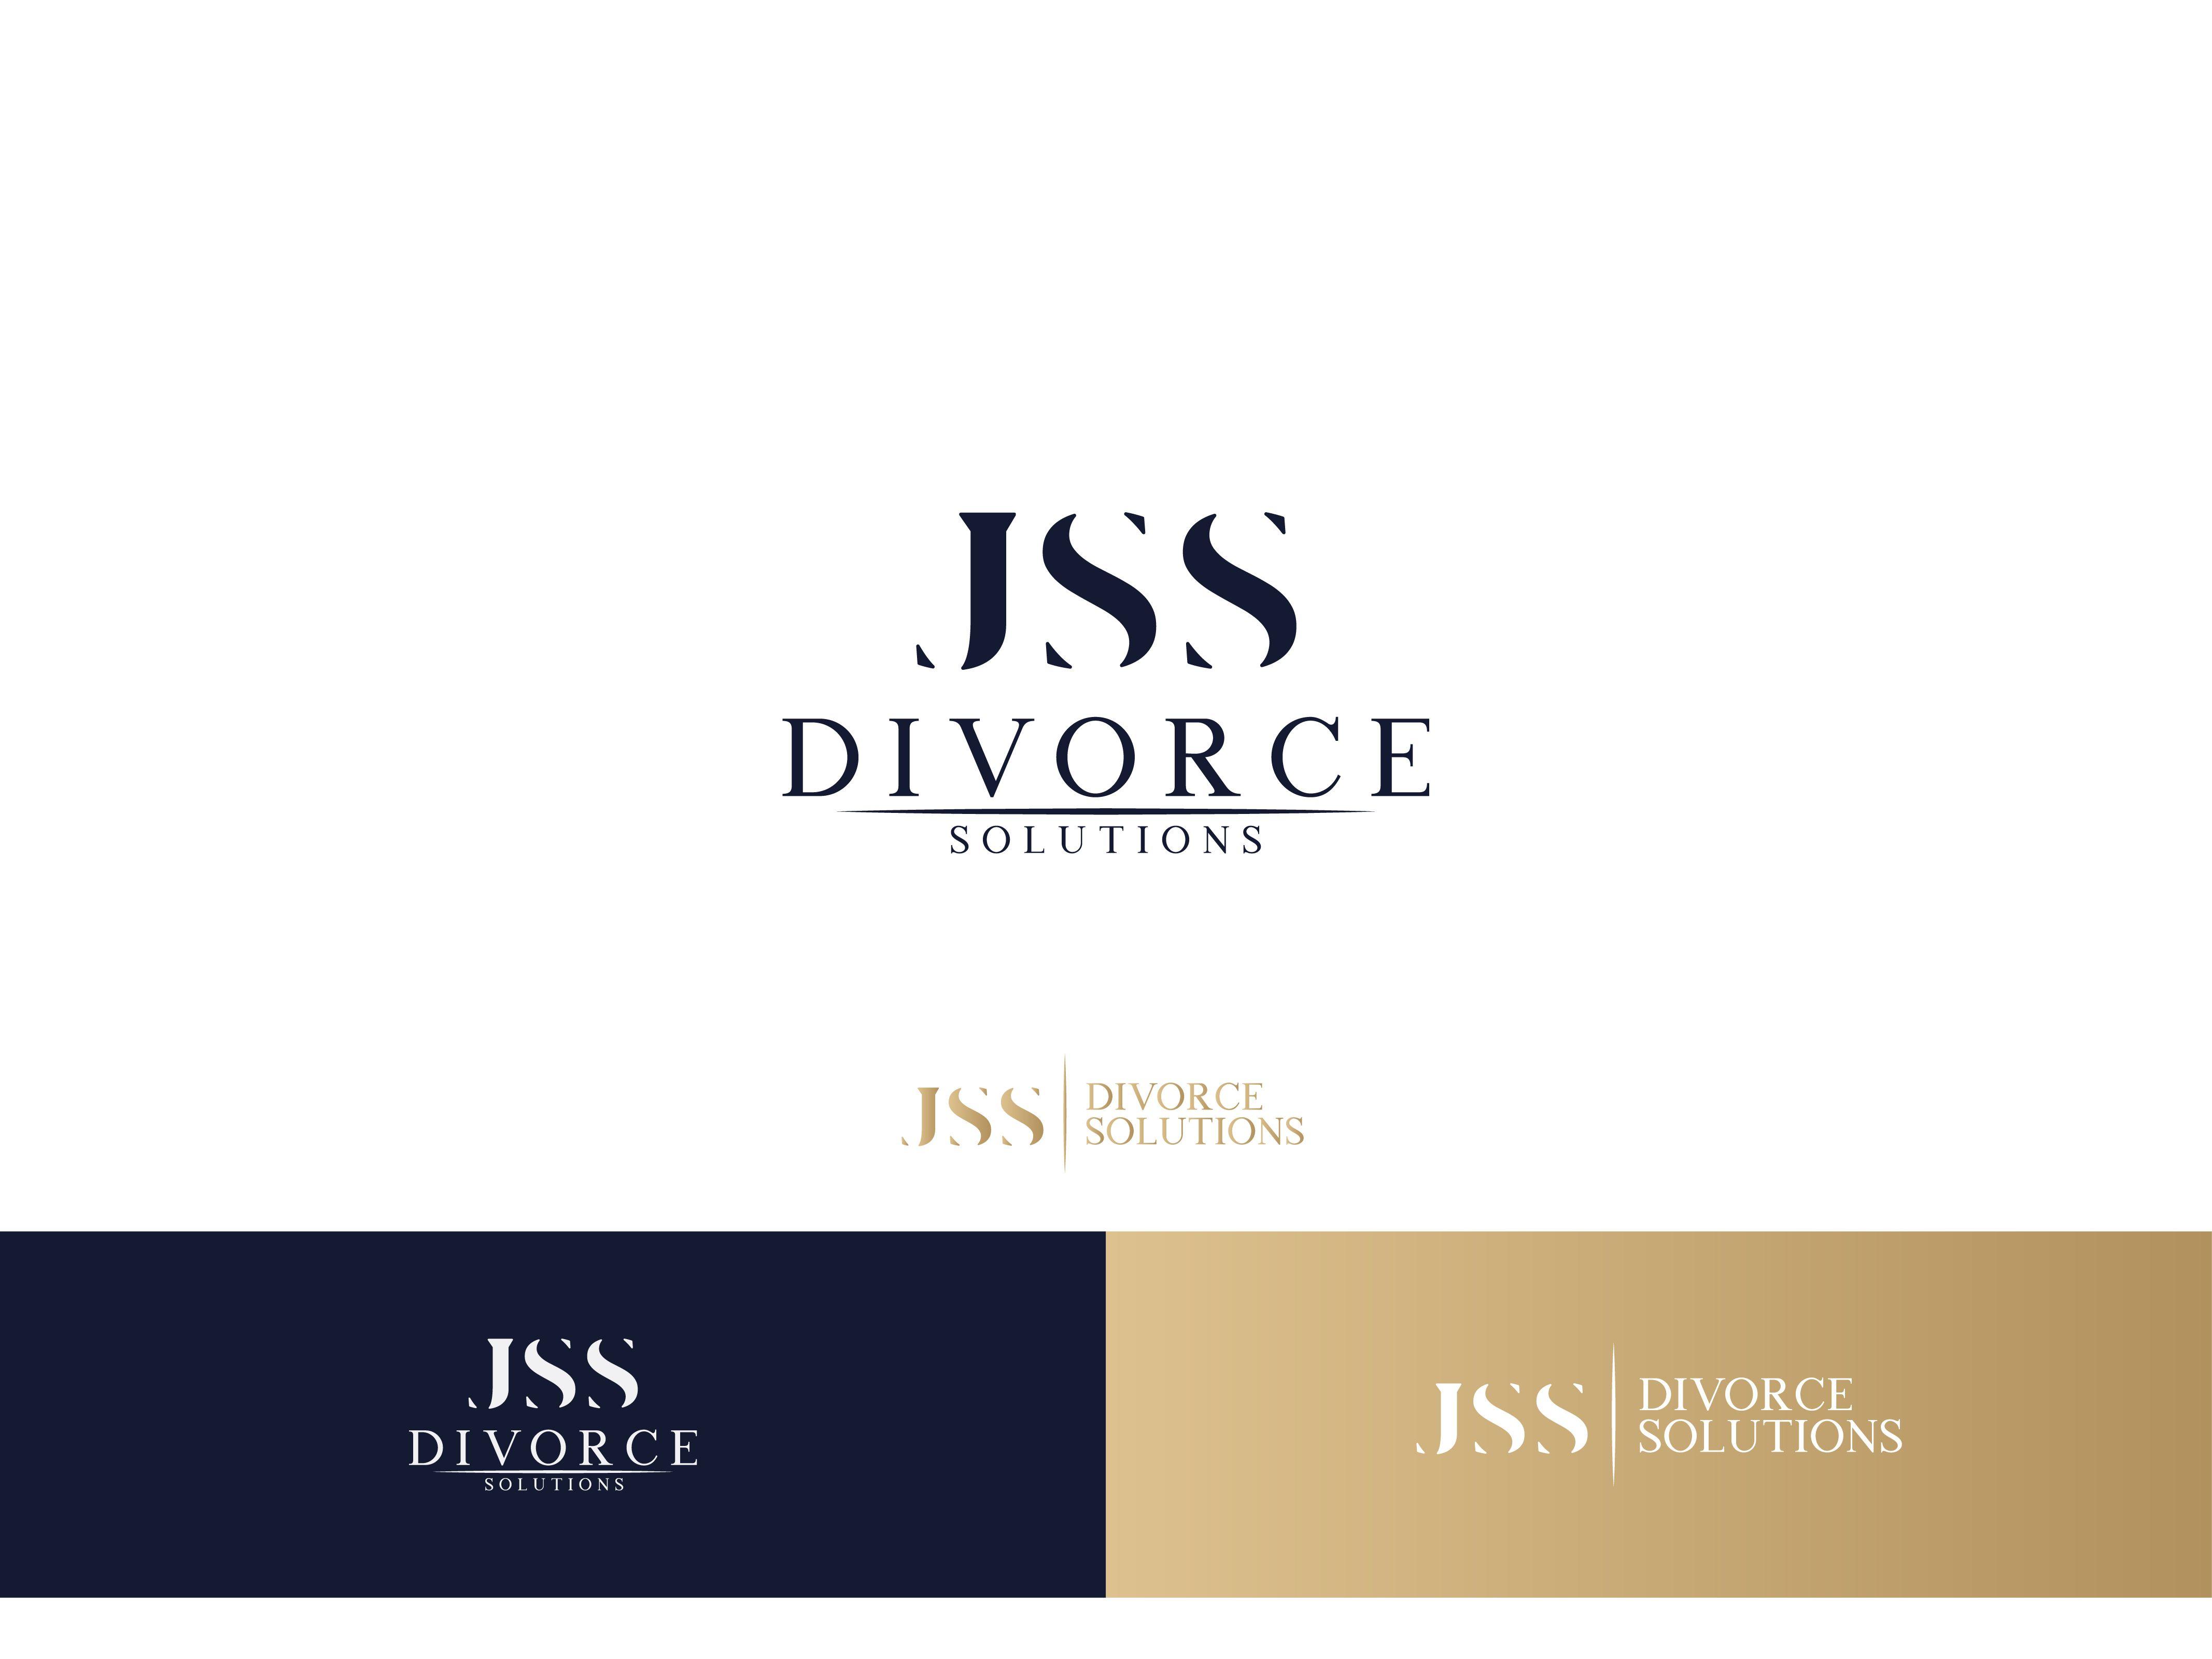 Divorce Logo - Logo Design #168 | 'JSS Divorce Solutions' design project ...